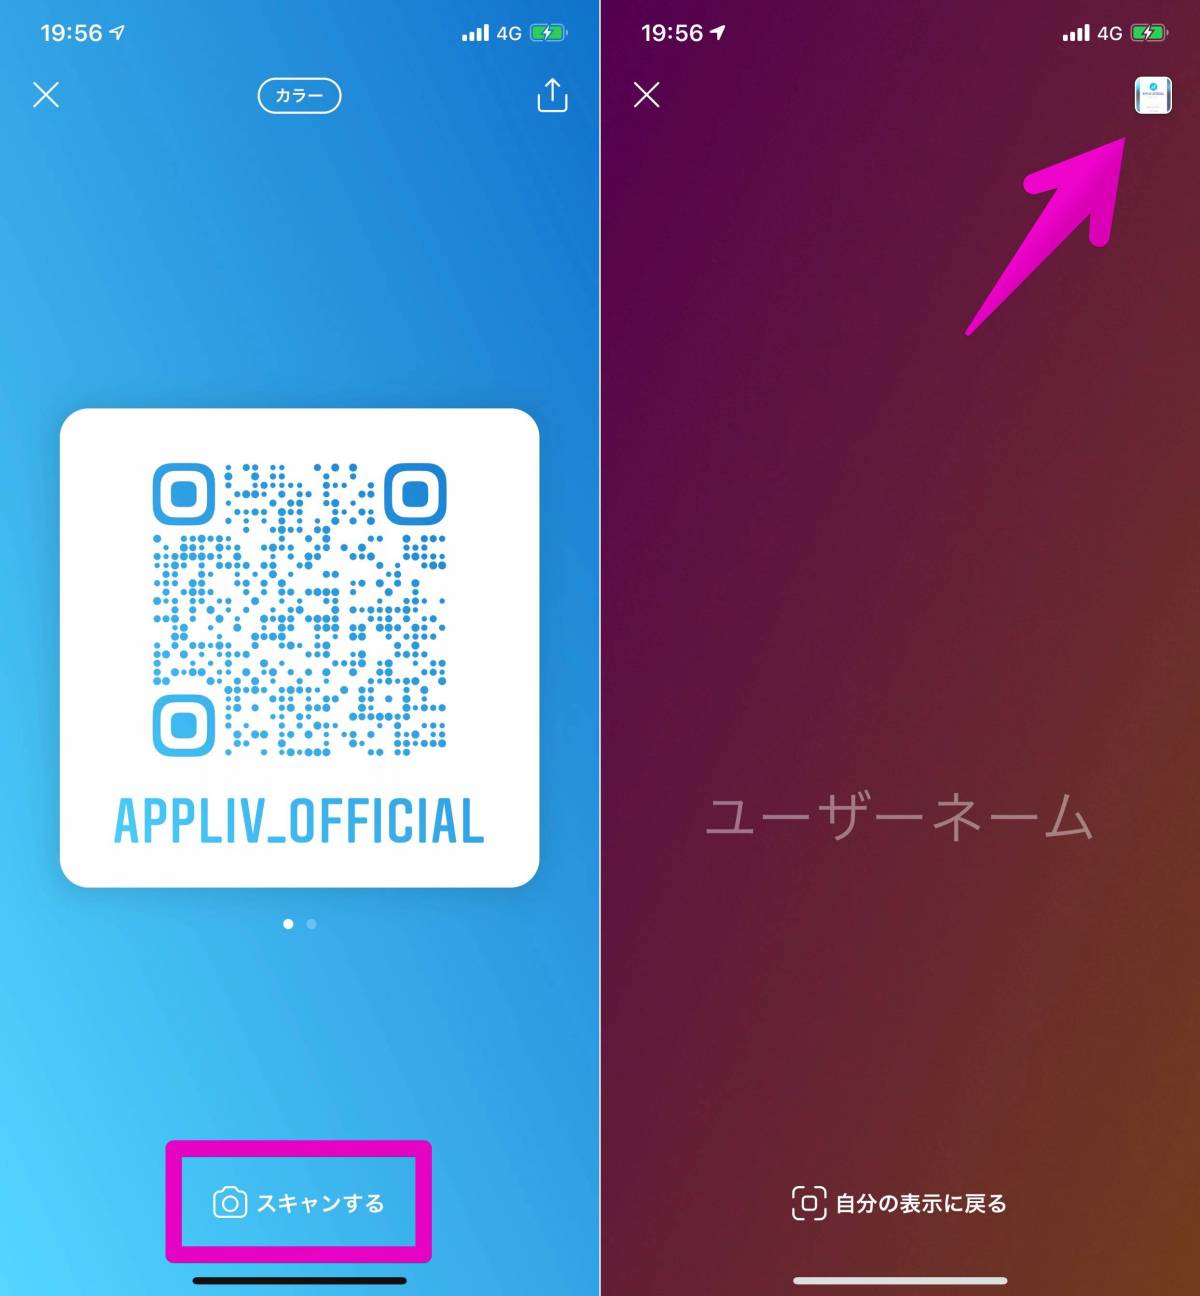 Instagram 自分のアカウントのqrコードを作成する方法 ネームタグよりも便利 Appliv Topics